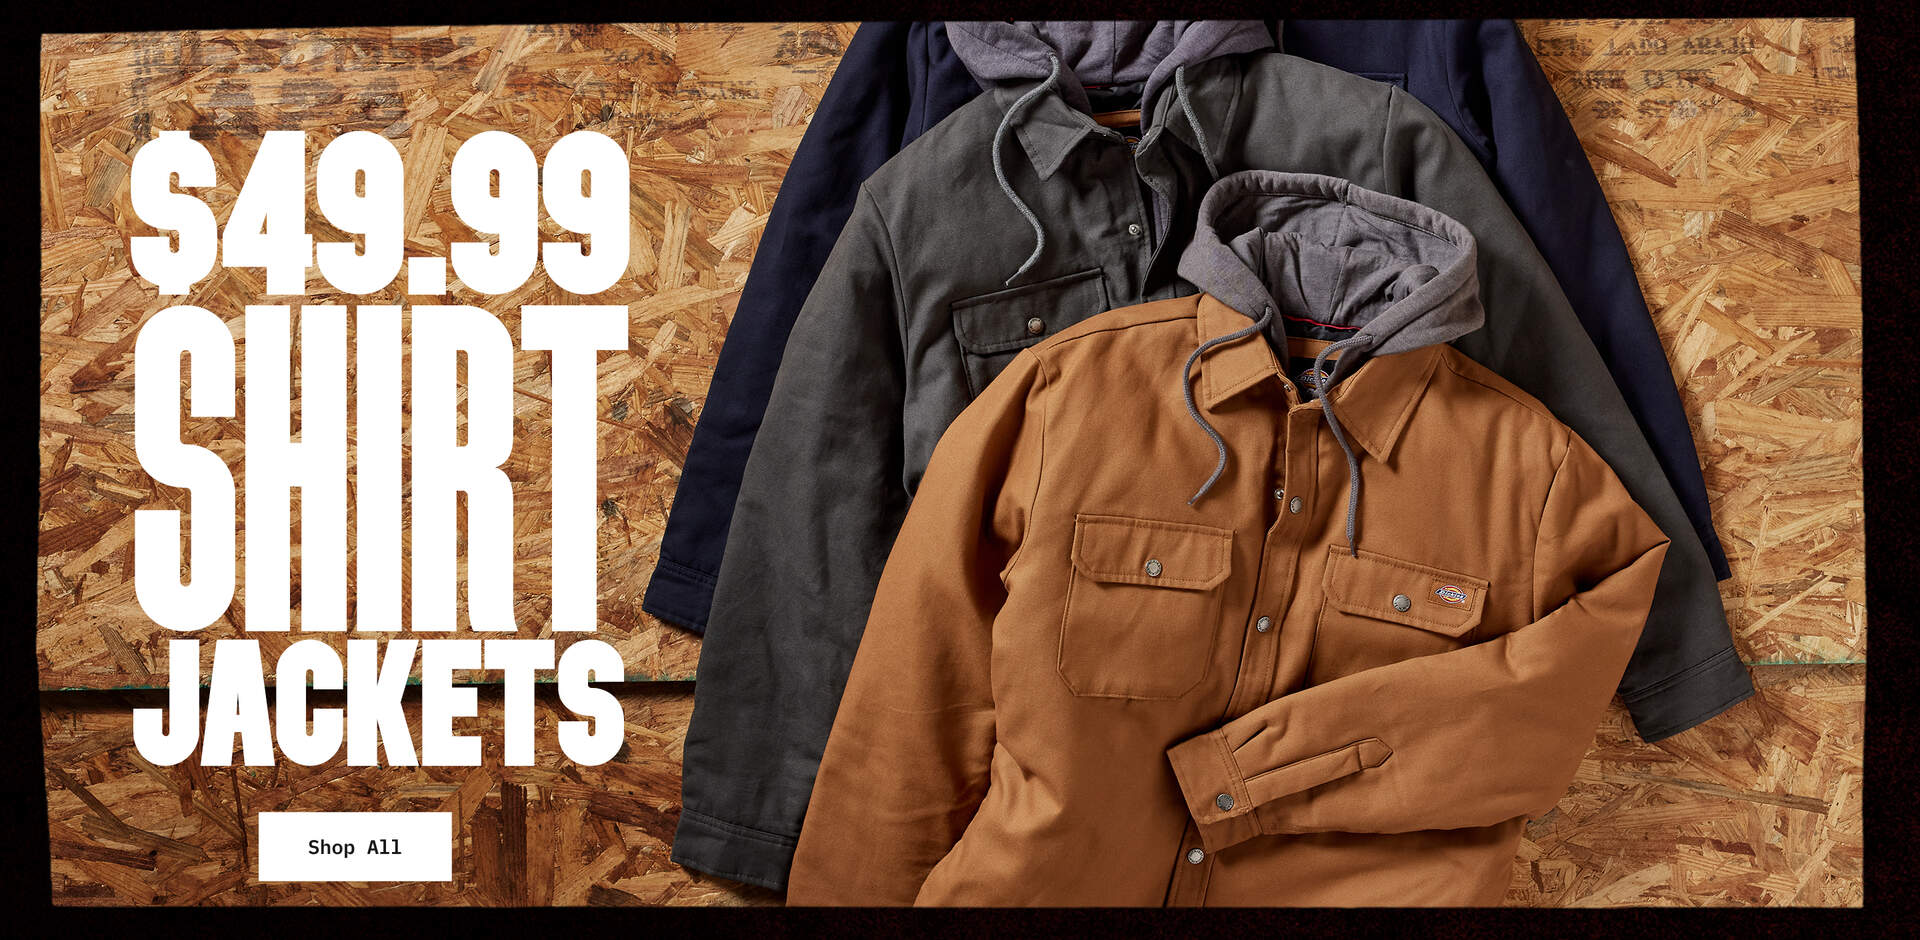 $49.99 Shirt Jackets - Shop All